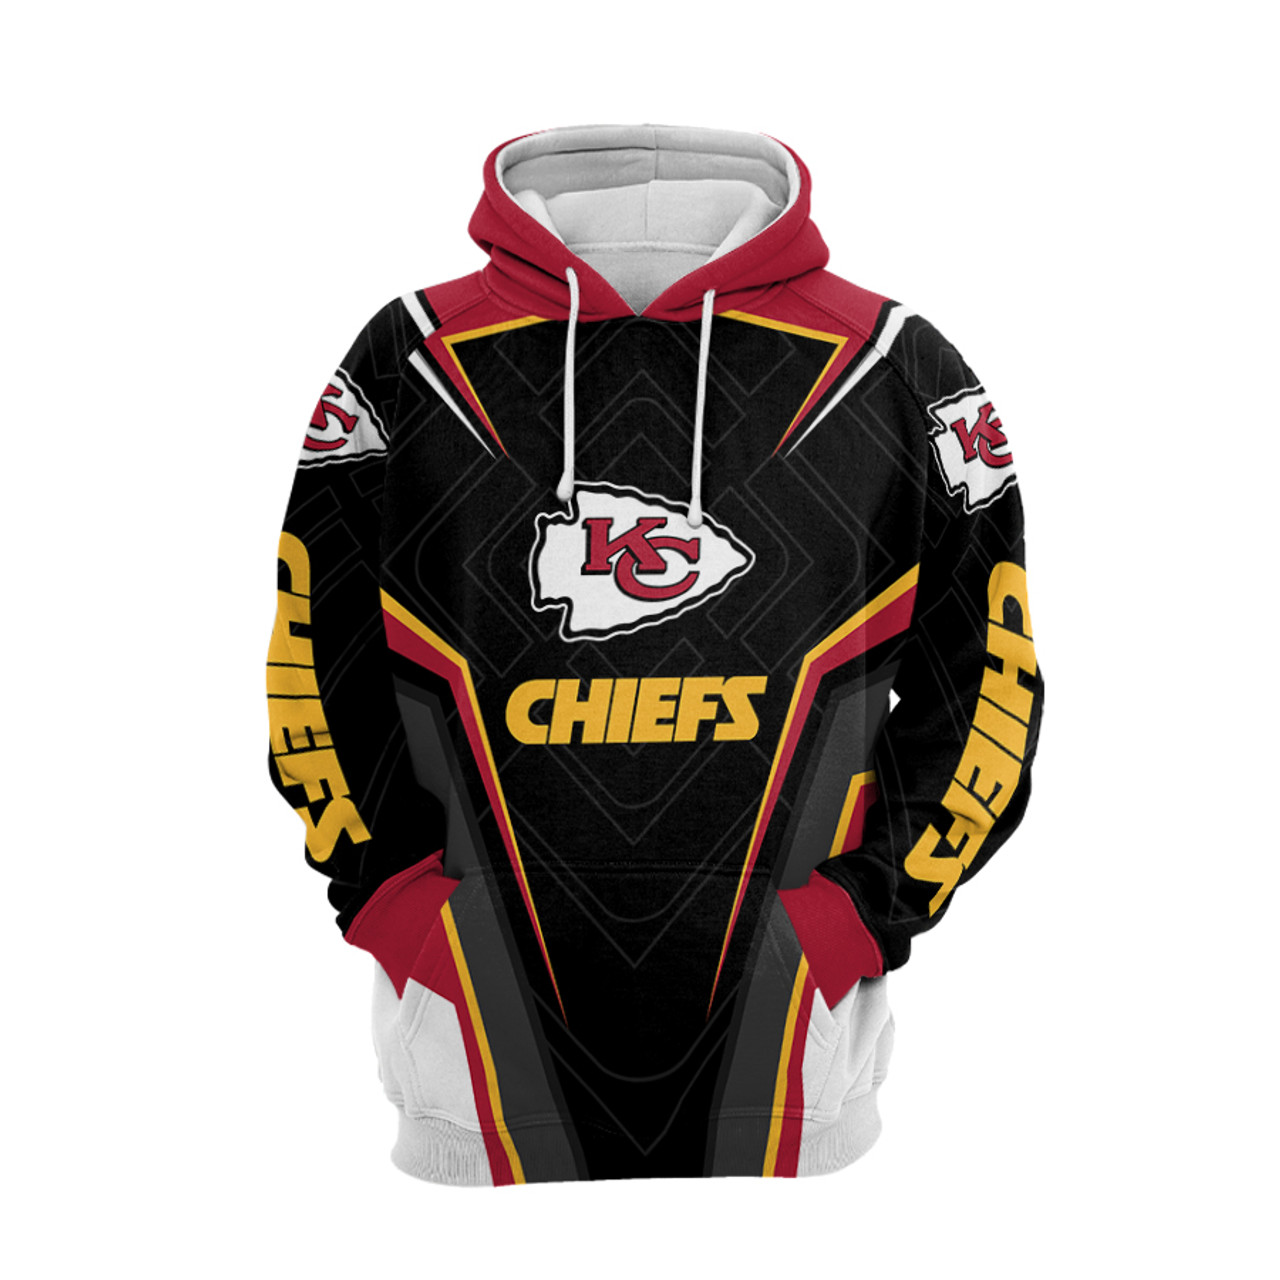 kansas city chiefs hockey jersey